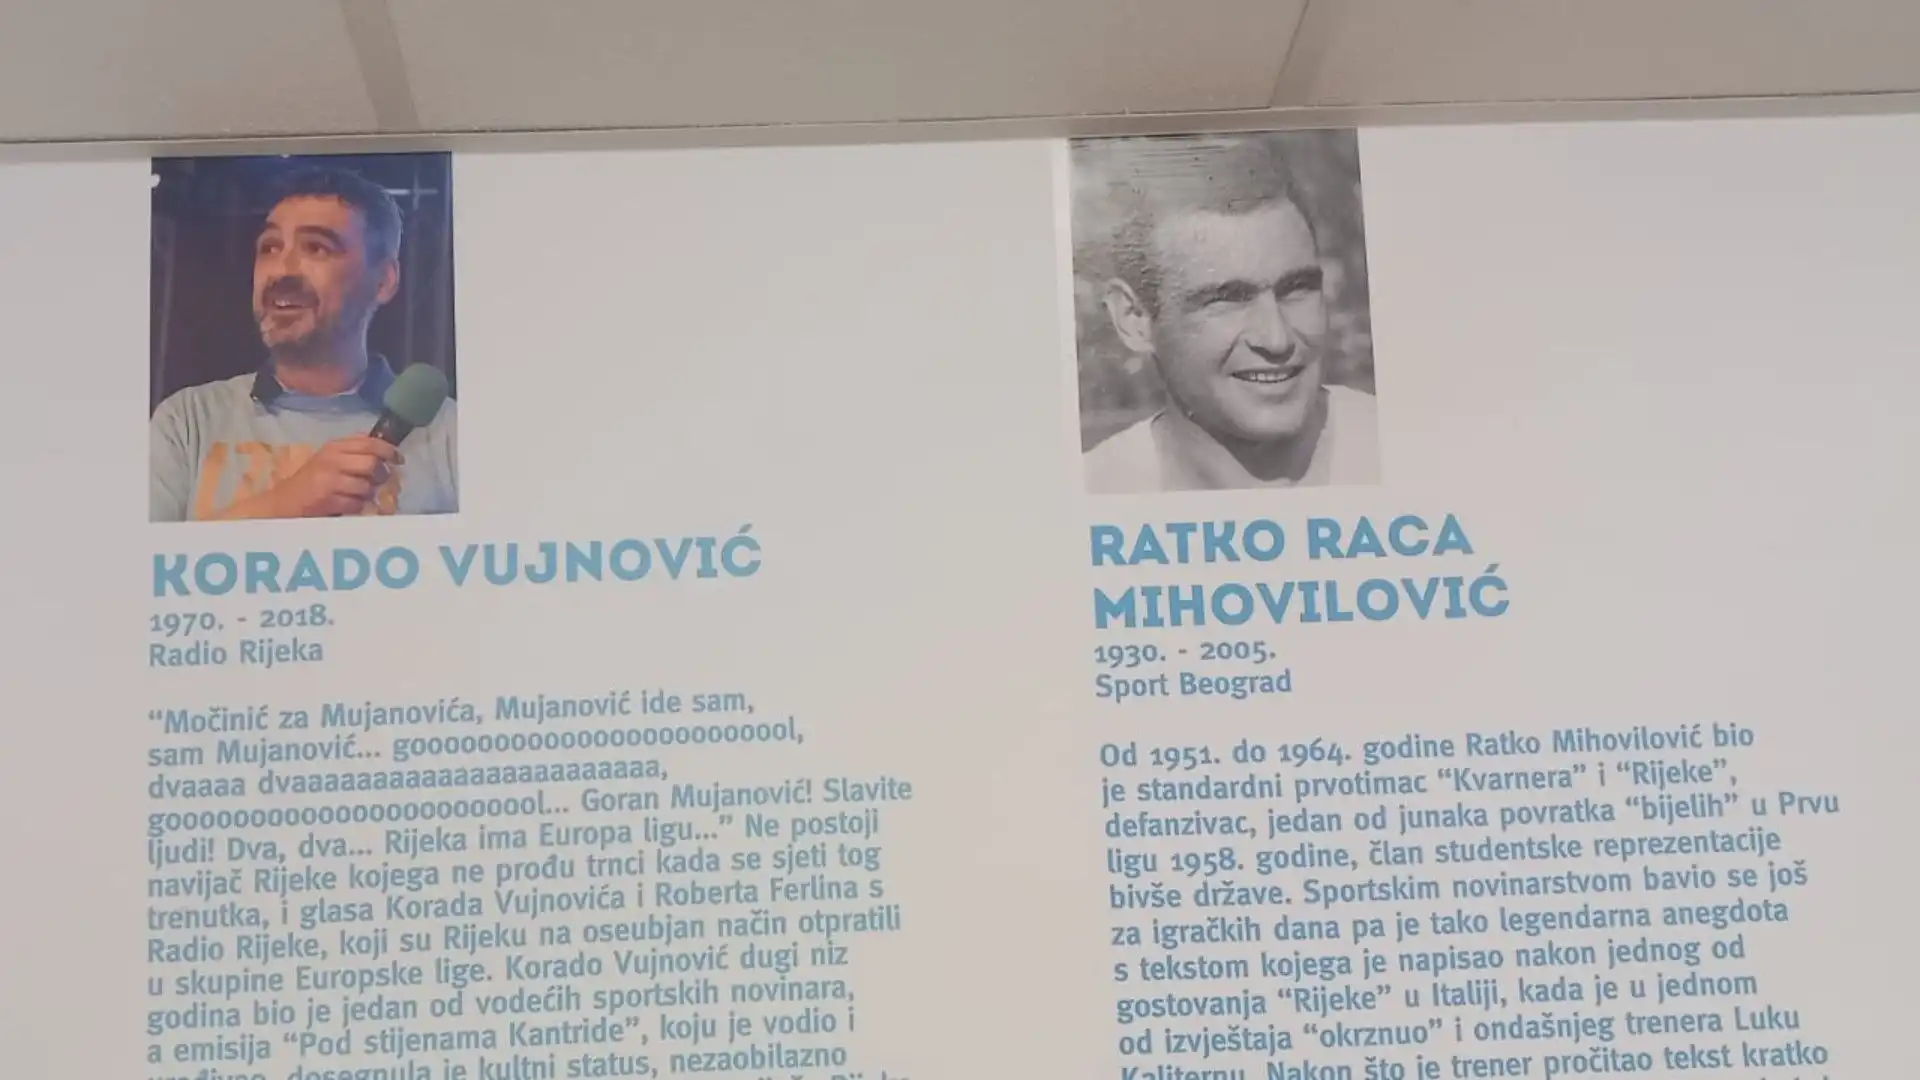 Korado Vujnovic è scomparso a soli 48 anni per un problema a un'aorta